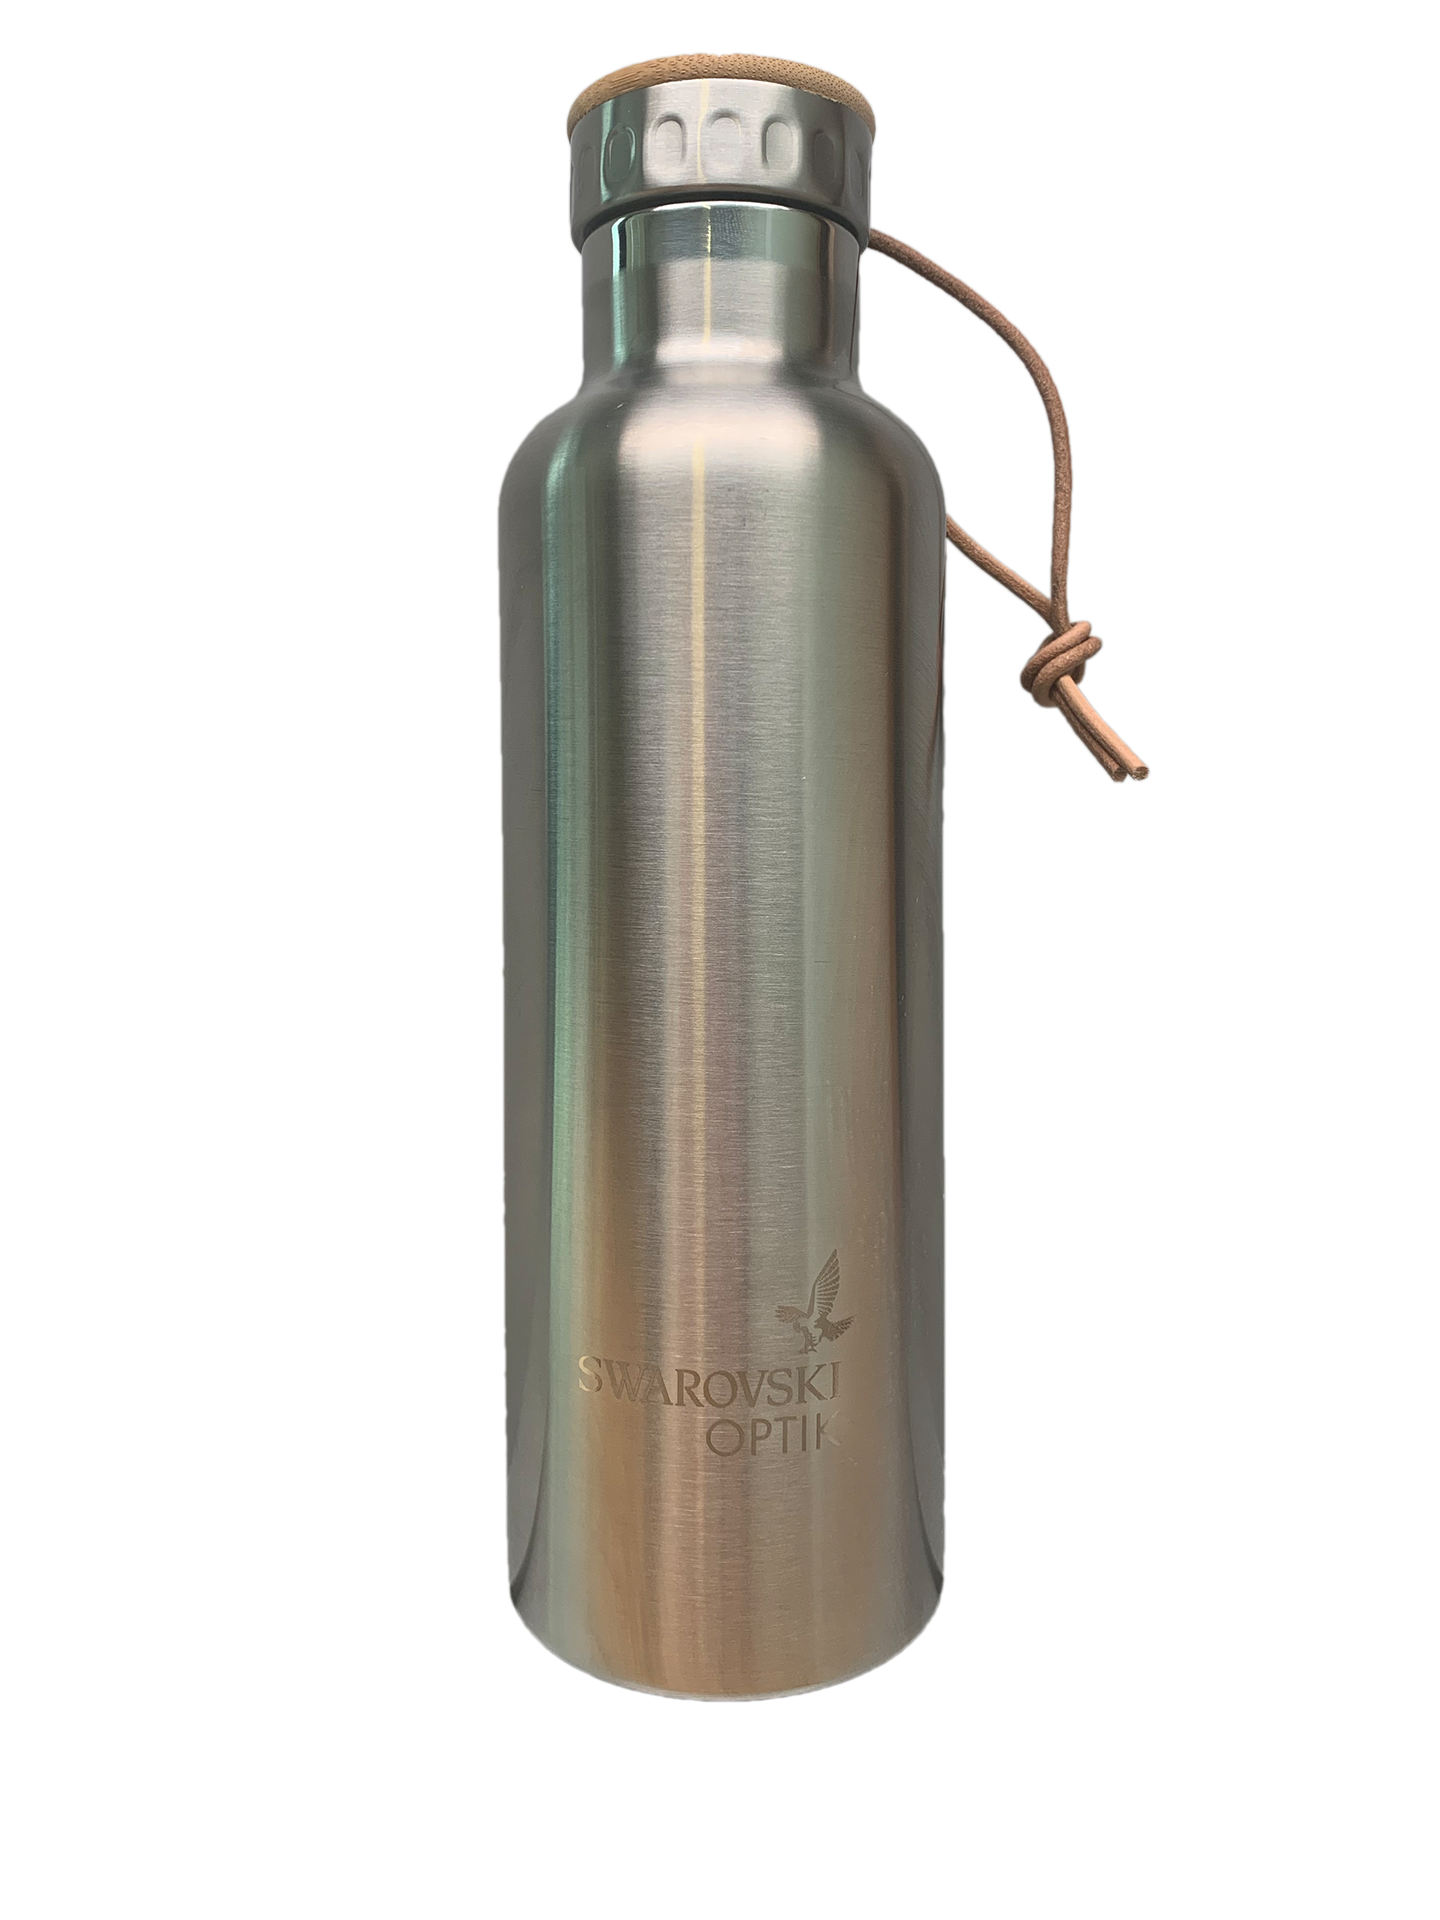 Swarovski Optik accessories Water bottle